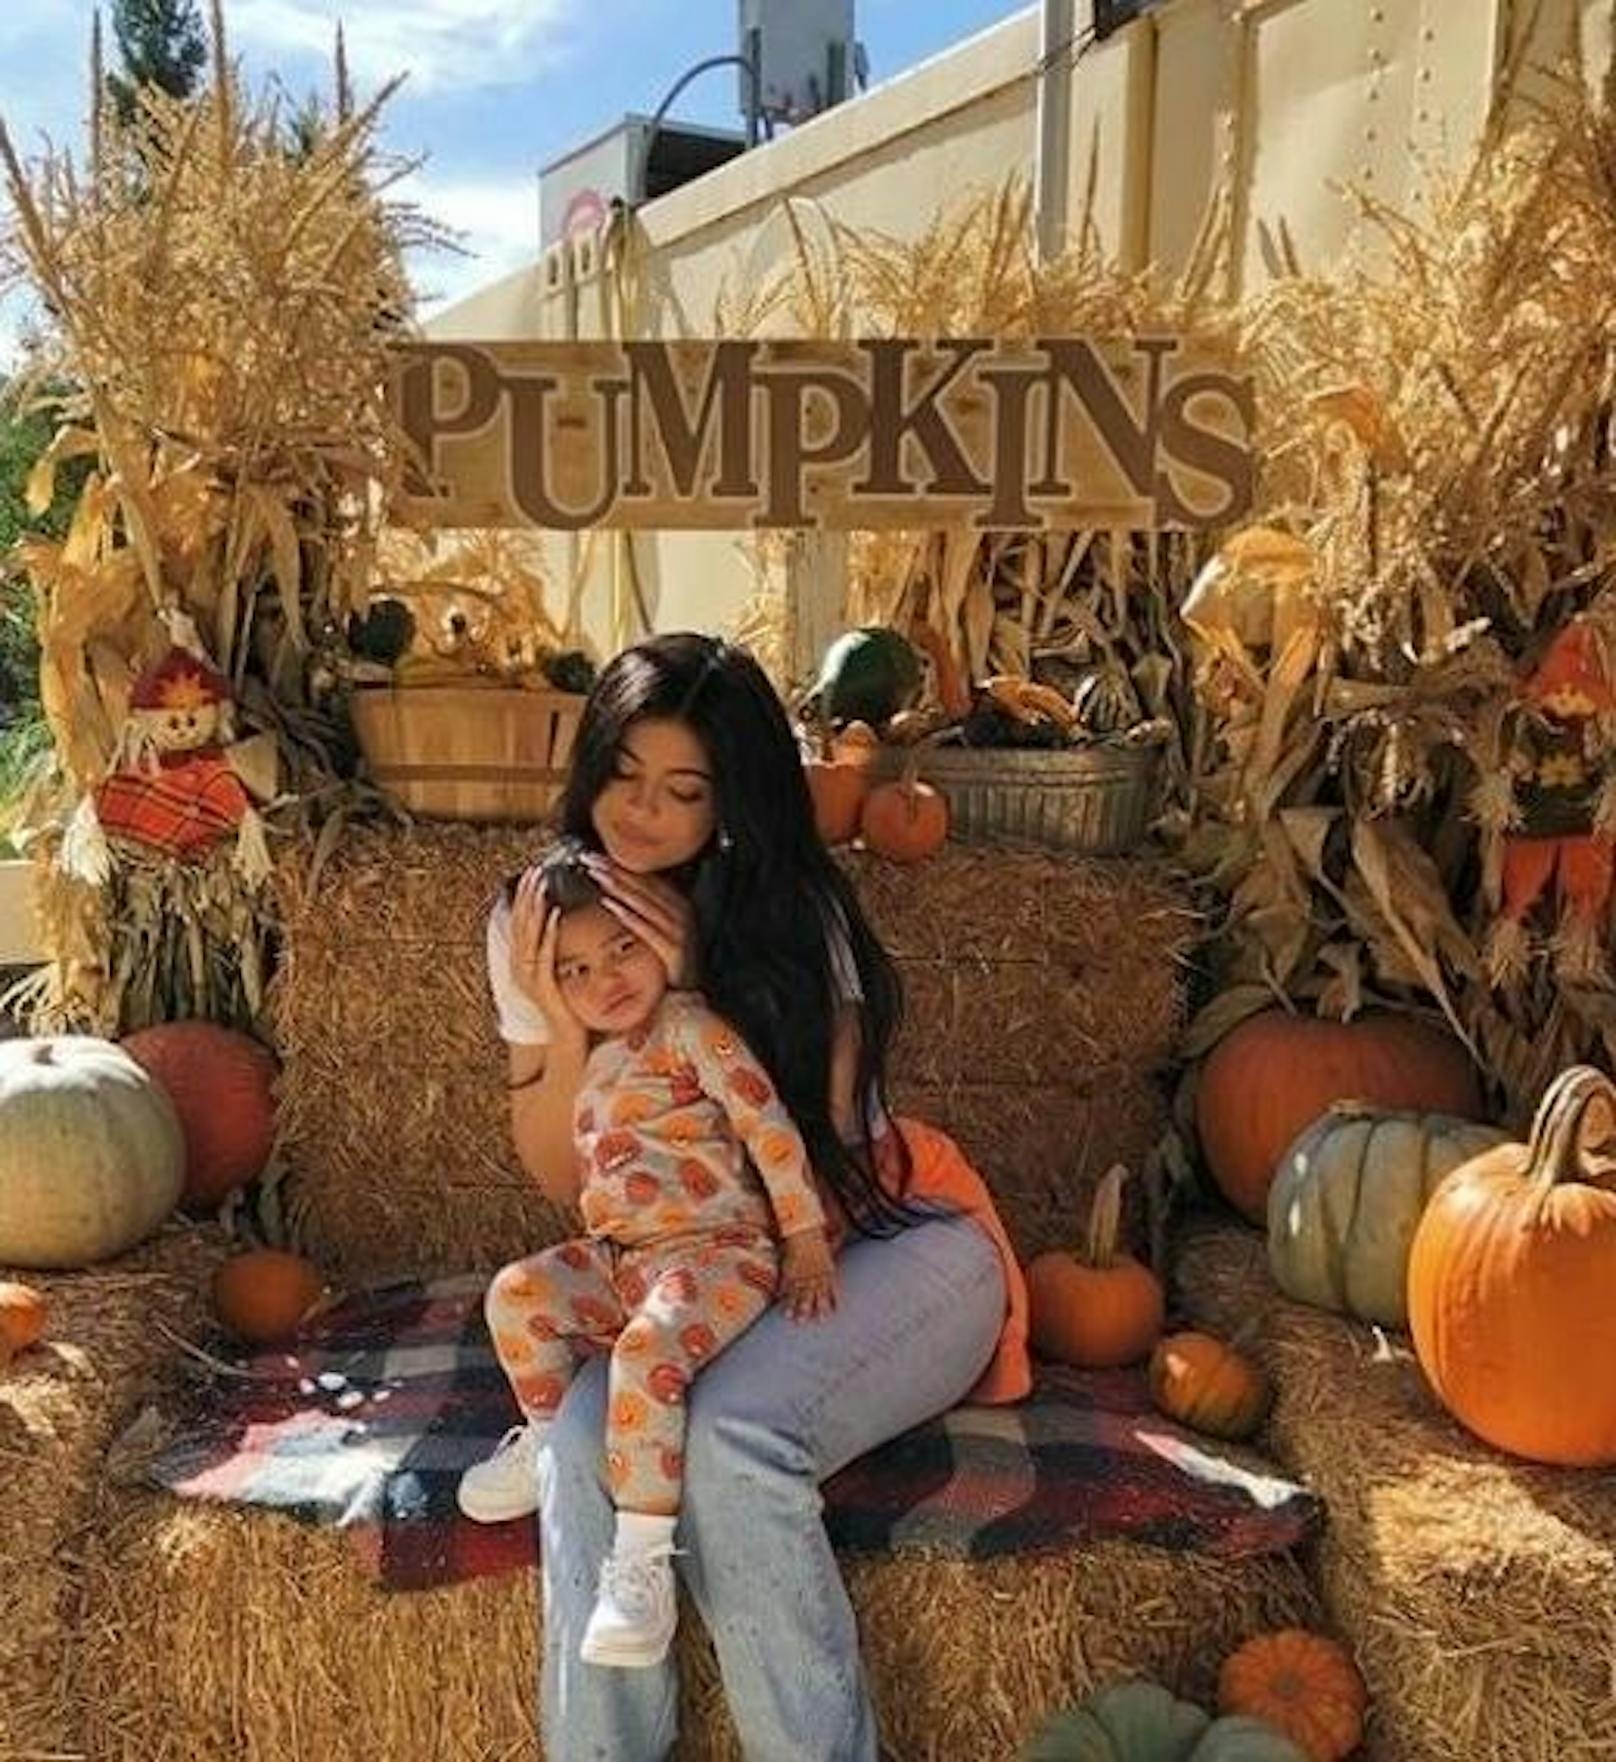 18.10.2019: Kylie Jenner und ihre kleine Tochter Stormi machen es sich vor ein paar Kürbissen auf einem Strohballen gemütlich. "Lasst die Festivitäten beginnen", freut sich Kylie schon auf Halloween. Oma Kris Jenner kommentiert ganz entzückt: "Meine zwei Kürbisse". :D